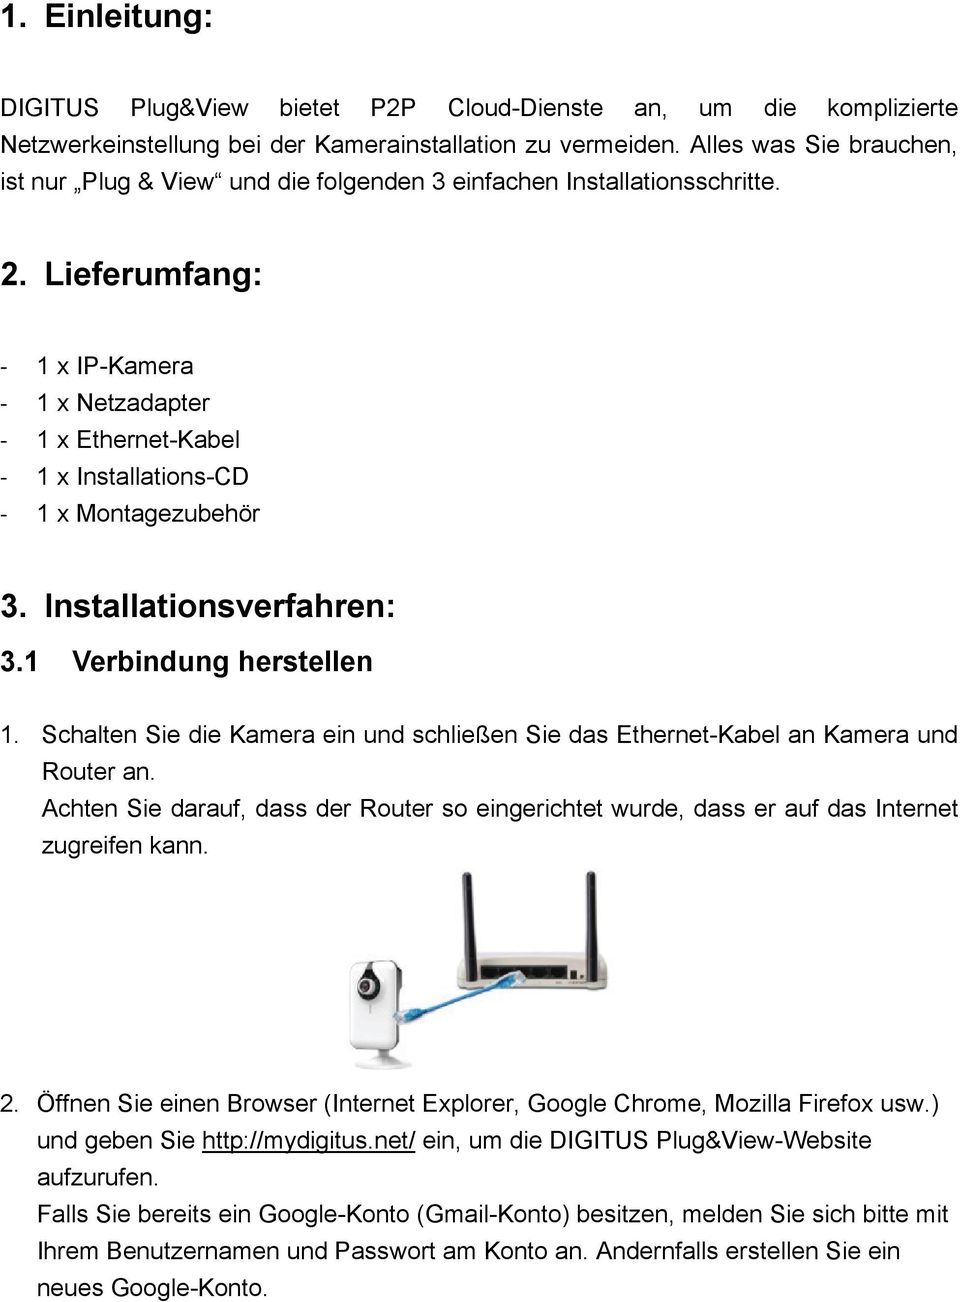 Lieferumfang: - 1 x IP-Kamera - 1 x Netzadapter - 1 x Ethernet-Kabel - 1 x Installations-CD - 1 x Montagezubehör 3. Installationsverfahren: 3.1 Verbindung herstellen 1.